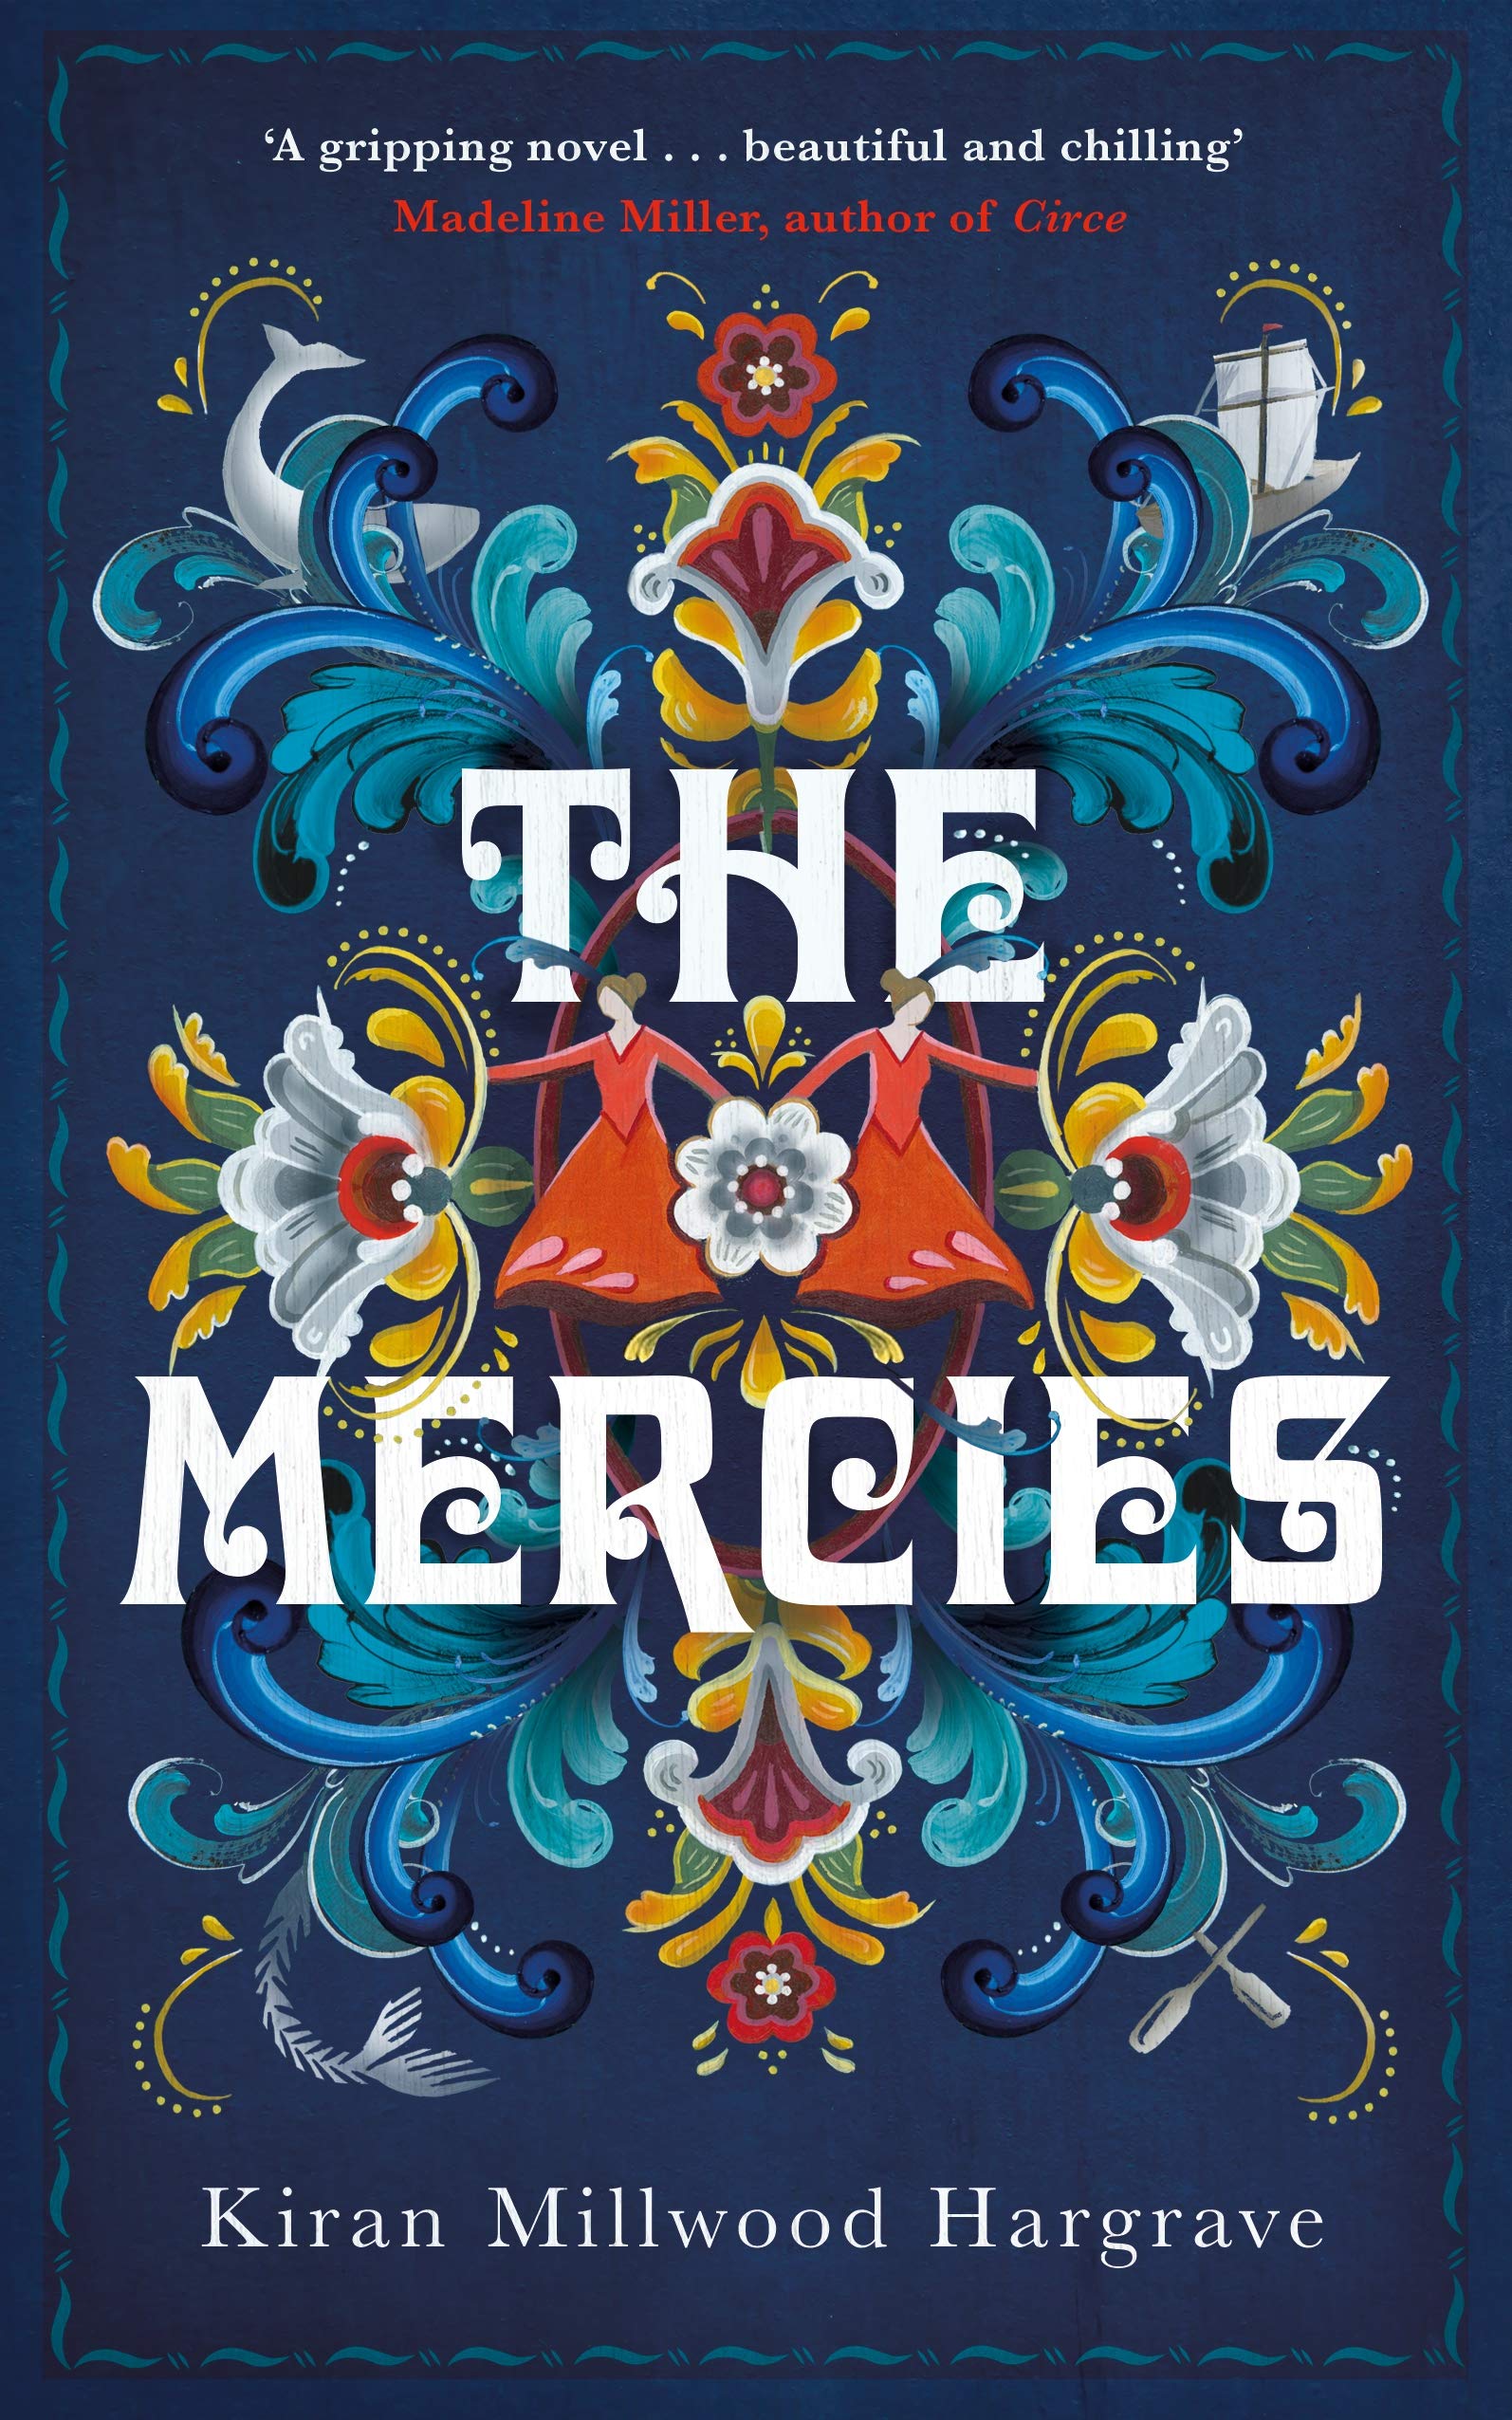 the mercies novel